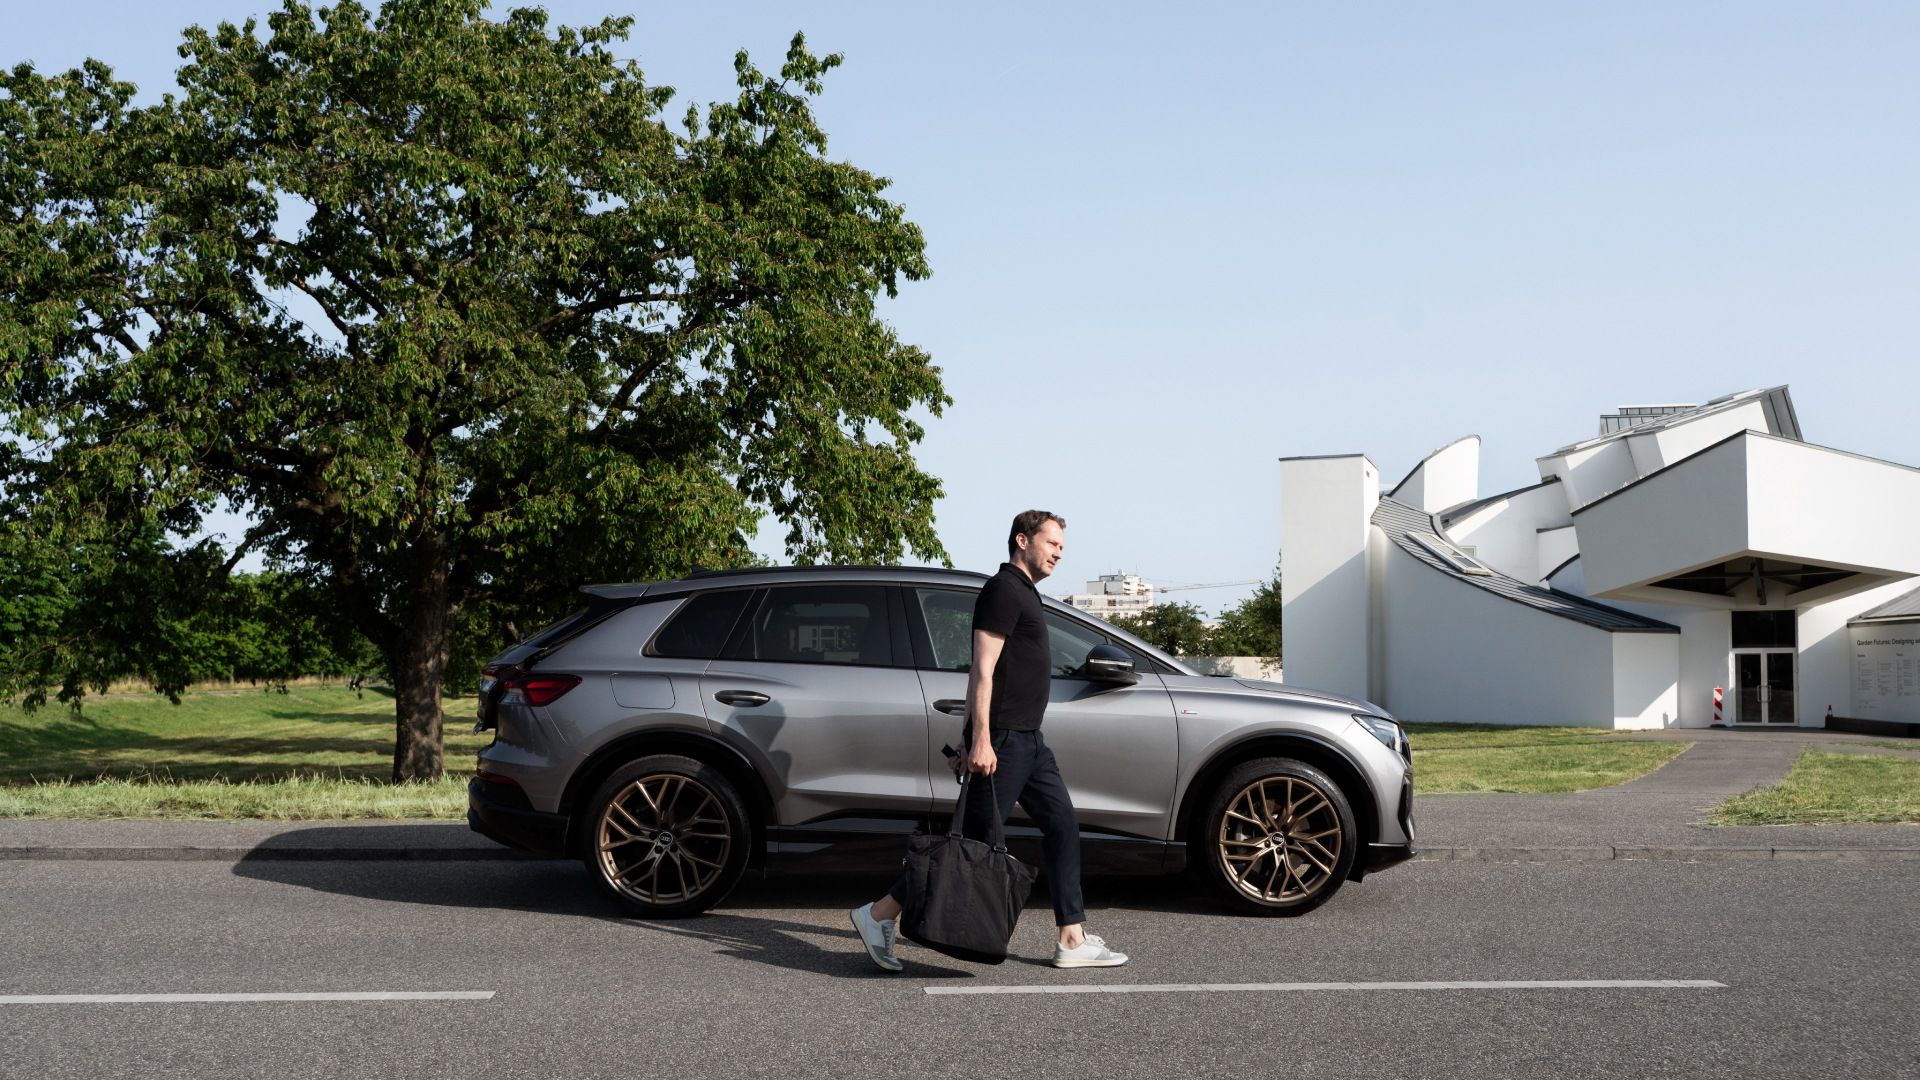 Mateo Kries et l'Audi Q4 e-tron devant le Vitra Design Museum.